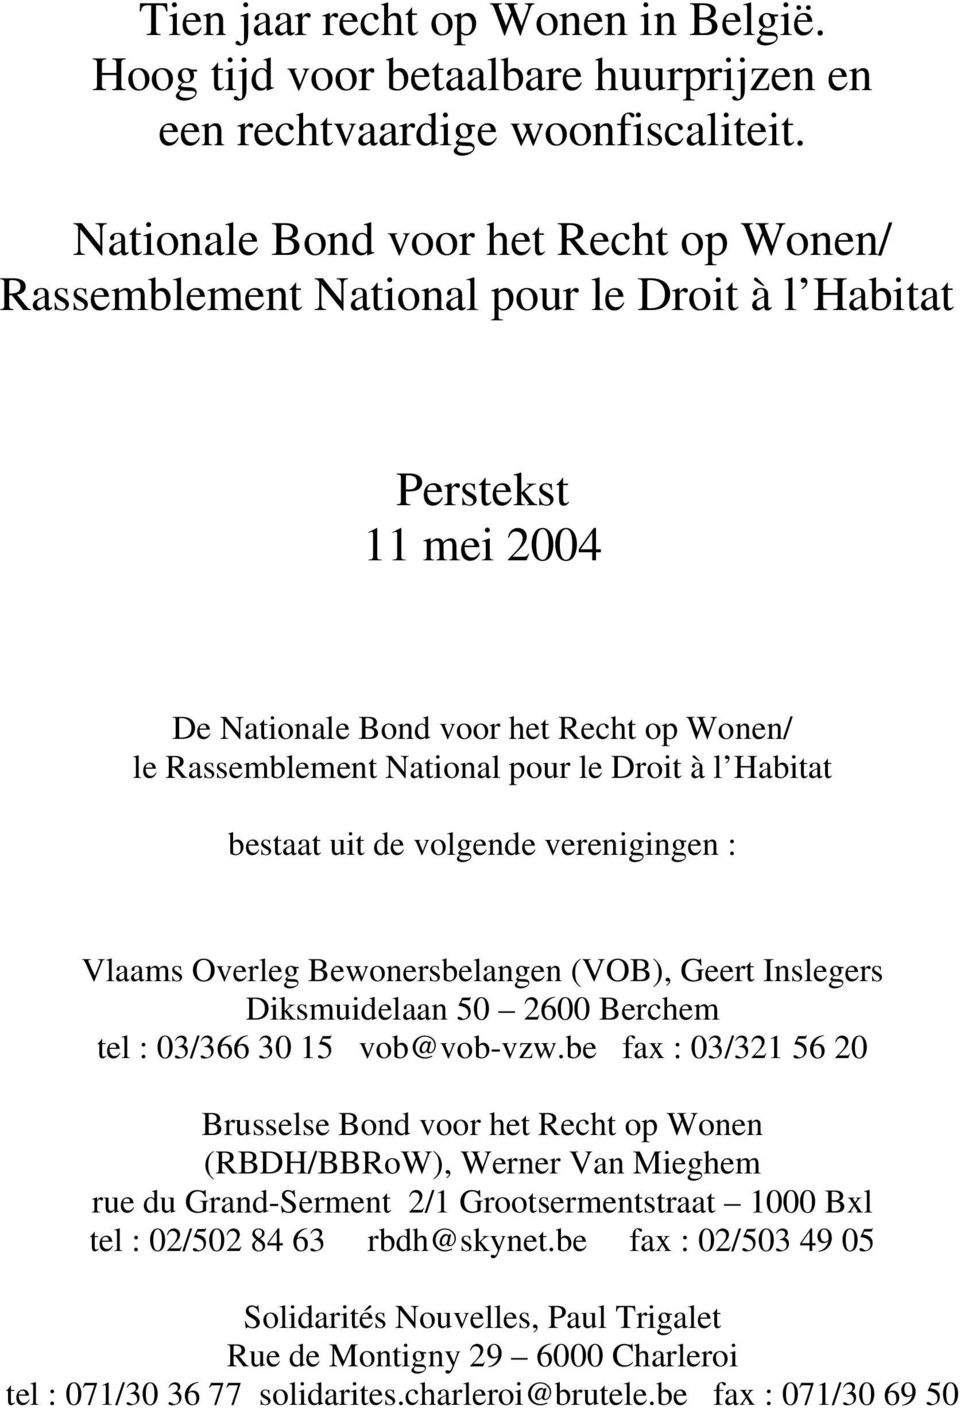 Habitat bestaat uit de volgende verenigingen : Vlaams Overleg Bewonersbelangen (VOB), Geert Inslegers Diksmuidelaan 50 2600 Berchem tel : 03/366 30 15 vob@vob-vzw.